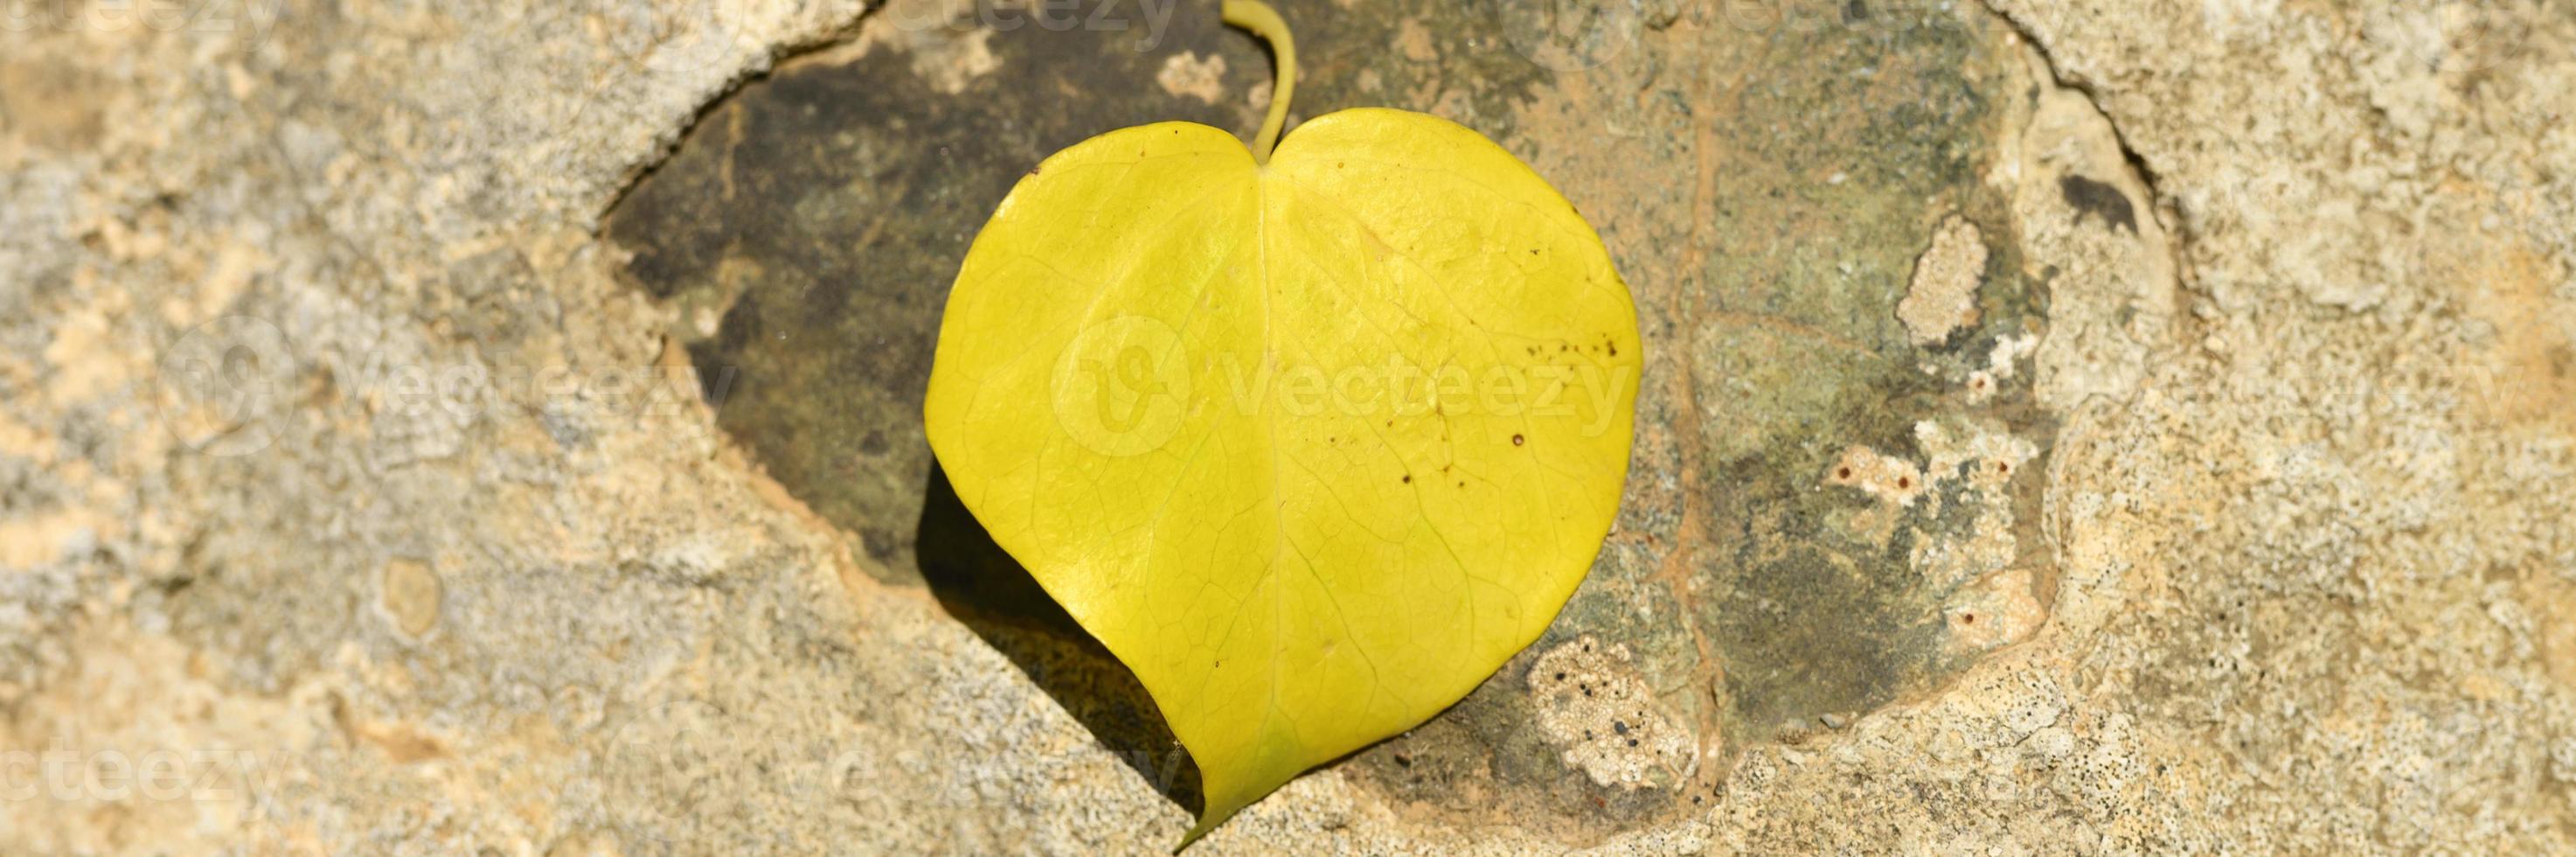 folha amarela caída de outono em forma de coração em uma pedra foto